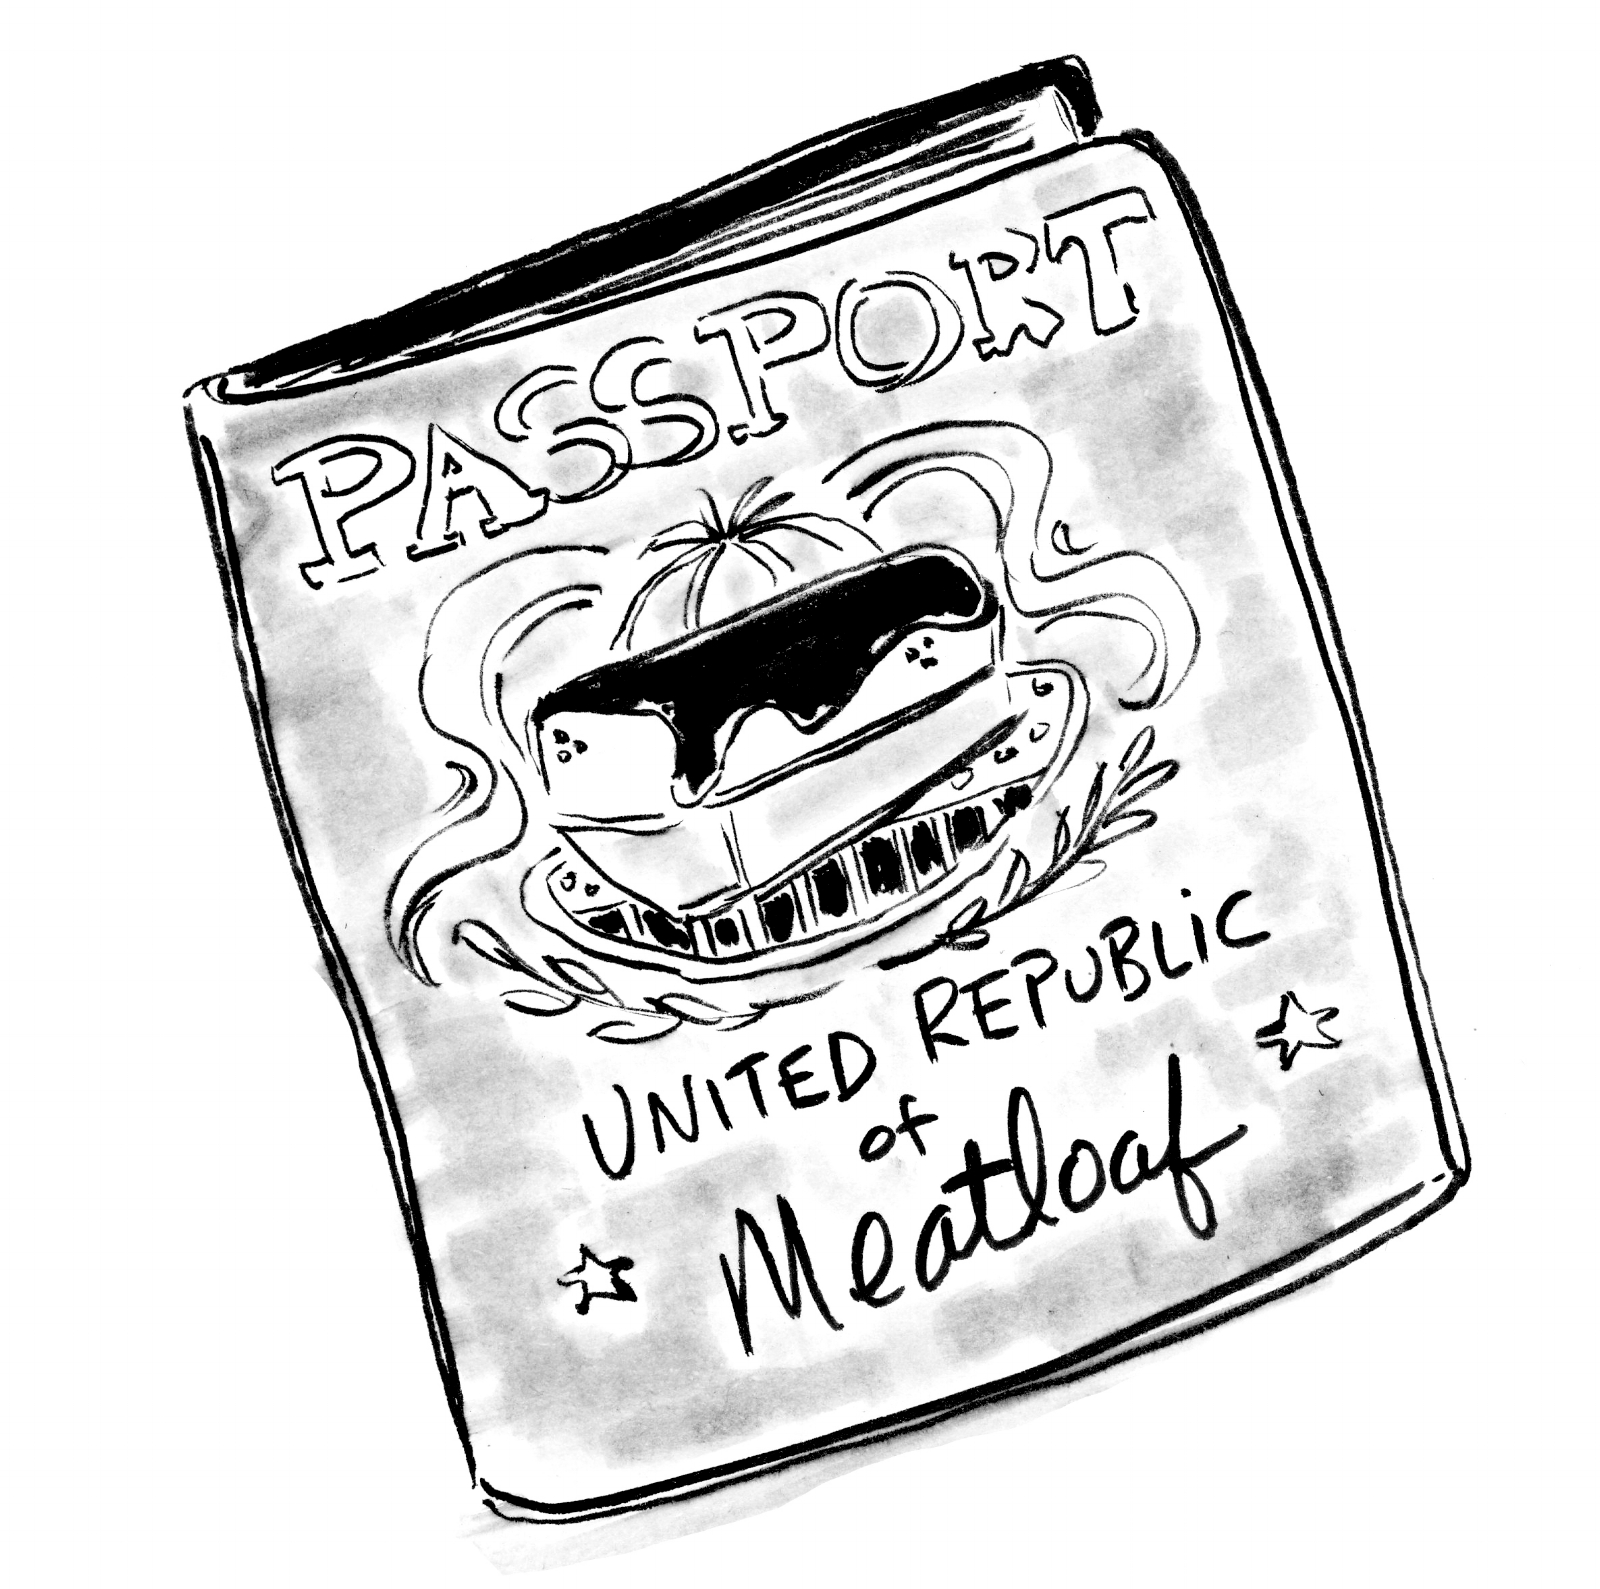 Ch2_Dialogue_Meatloaf_Passport.jpg